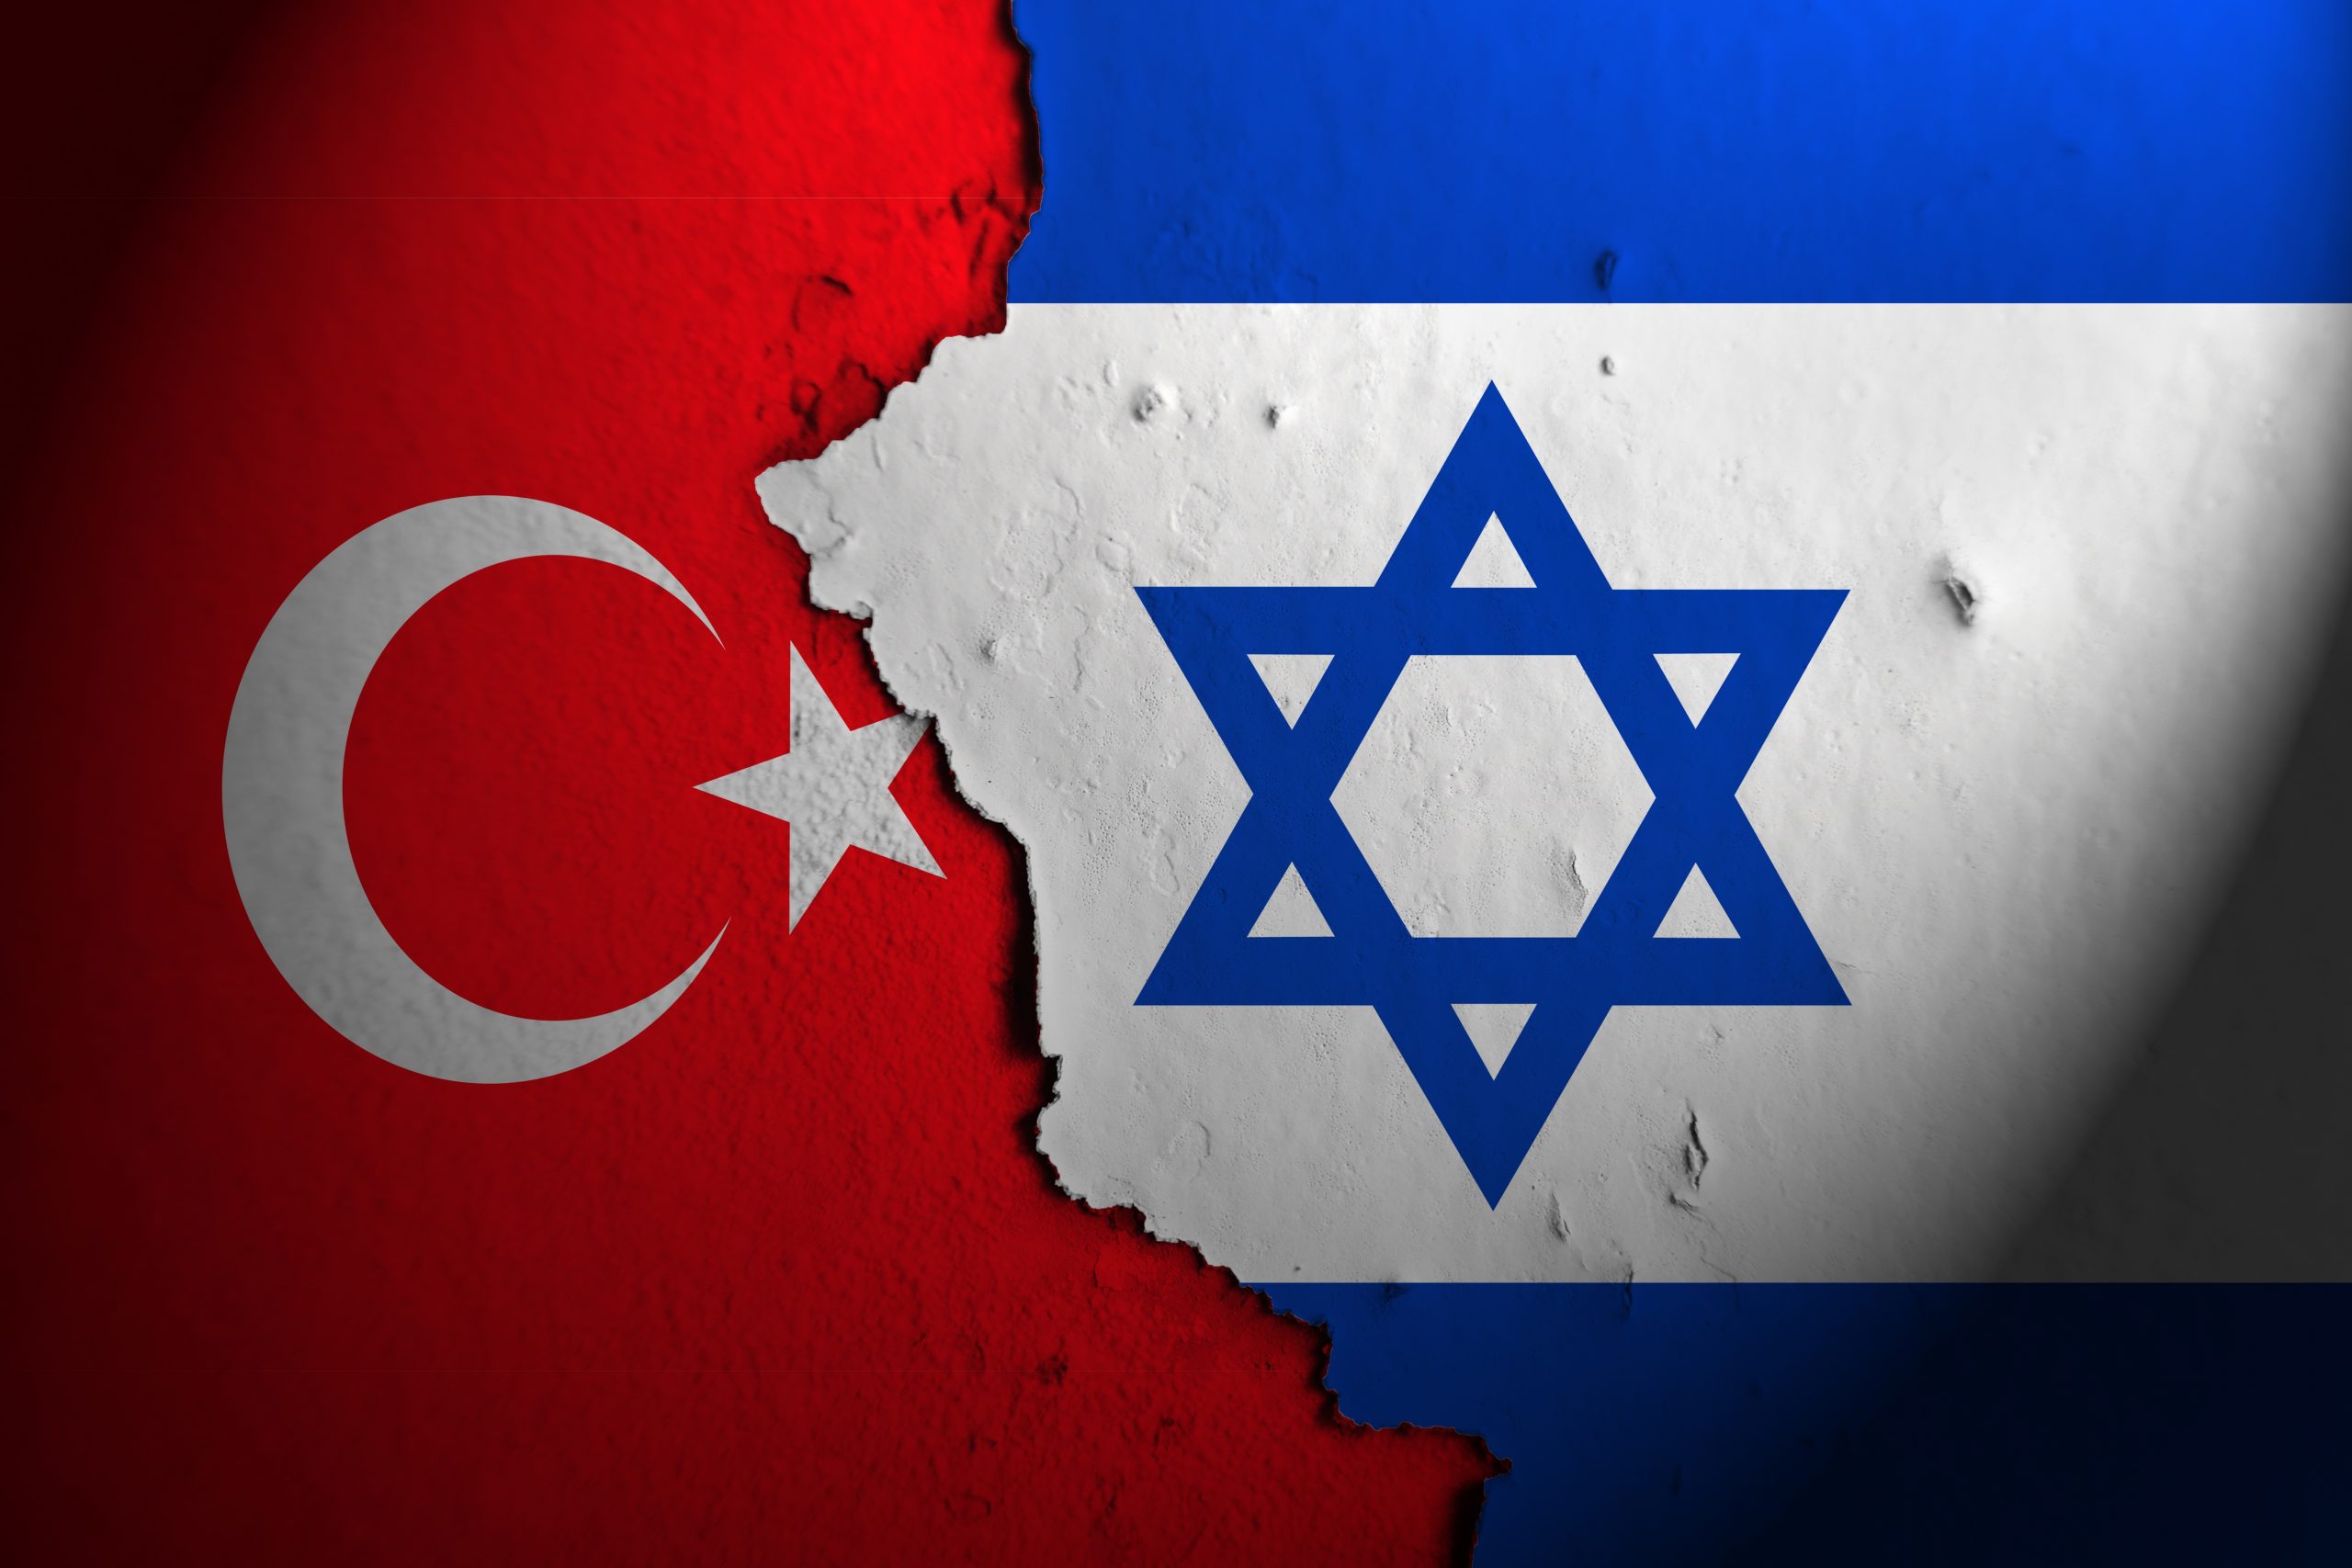 Turcia suspendă orice fel de relație economică cu Israel